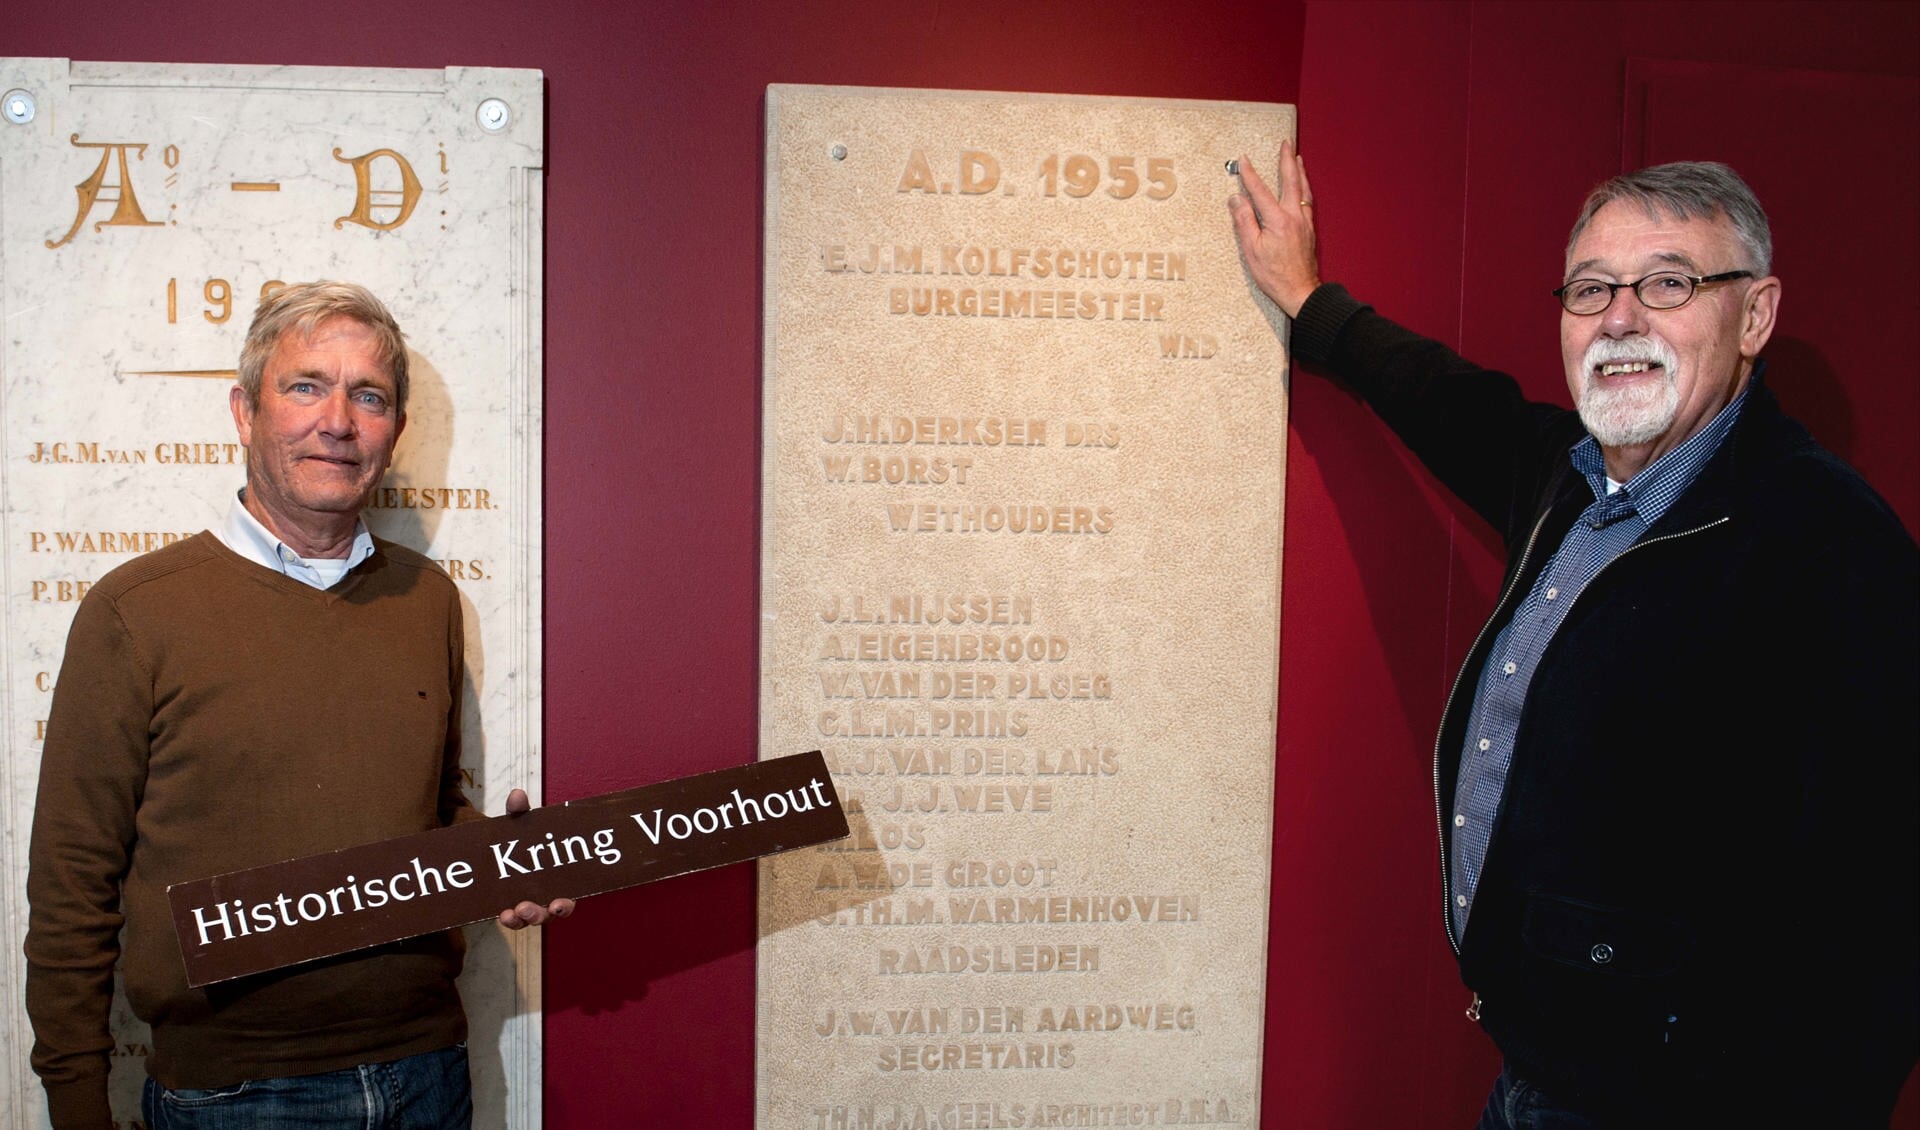 Cok van Steijn en Emiel van der Hoeven bij de bijzondere tableaus in de hal van het nieuwe Kenniscentrum. | Foto: Willem Krol